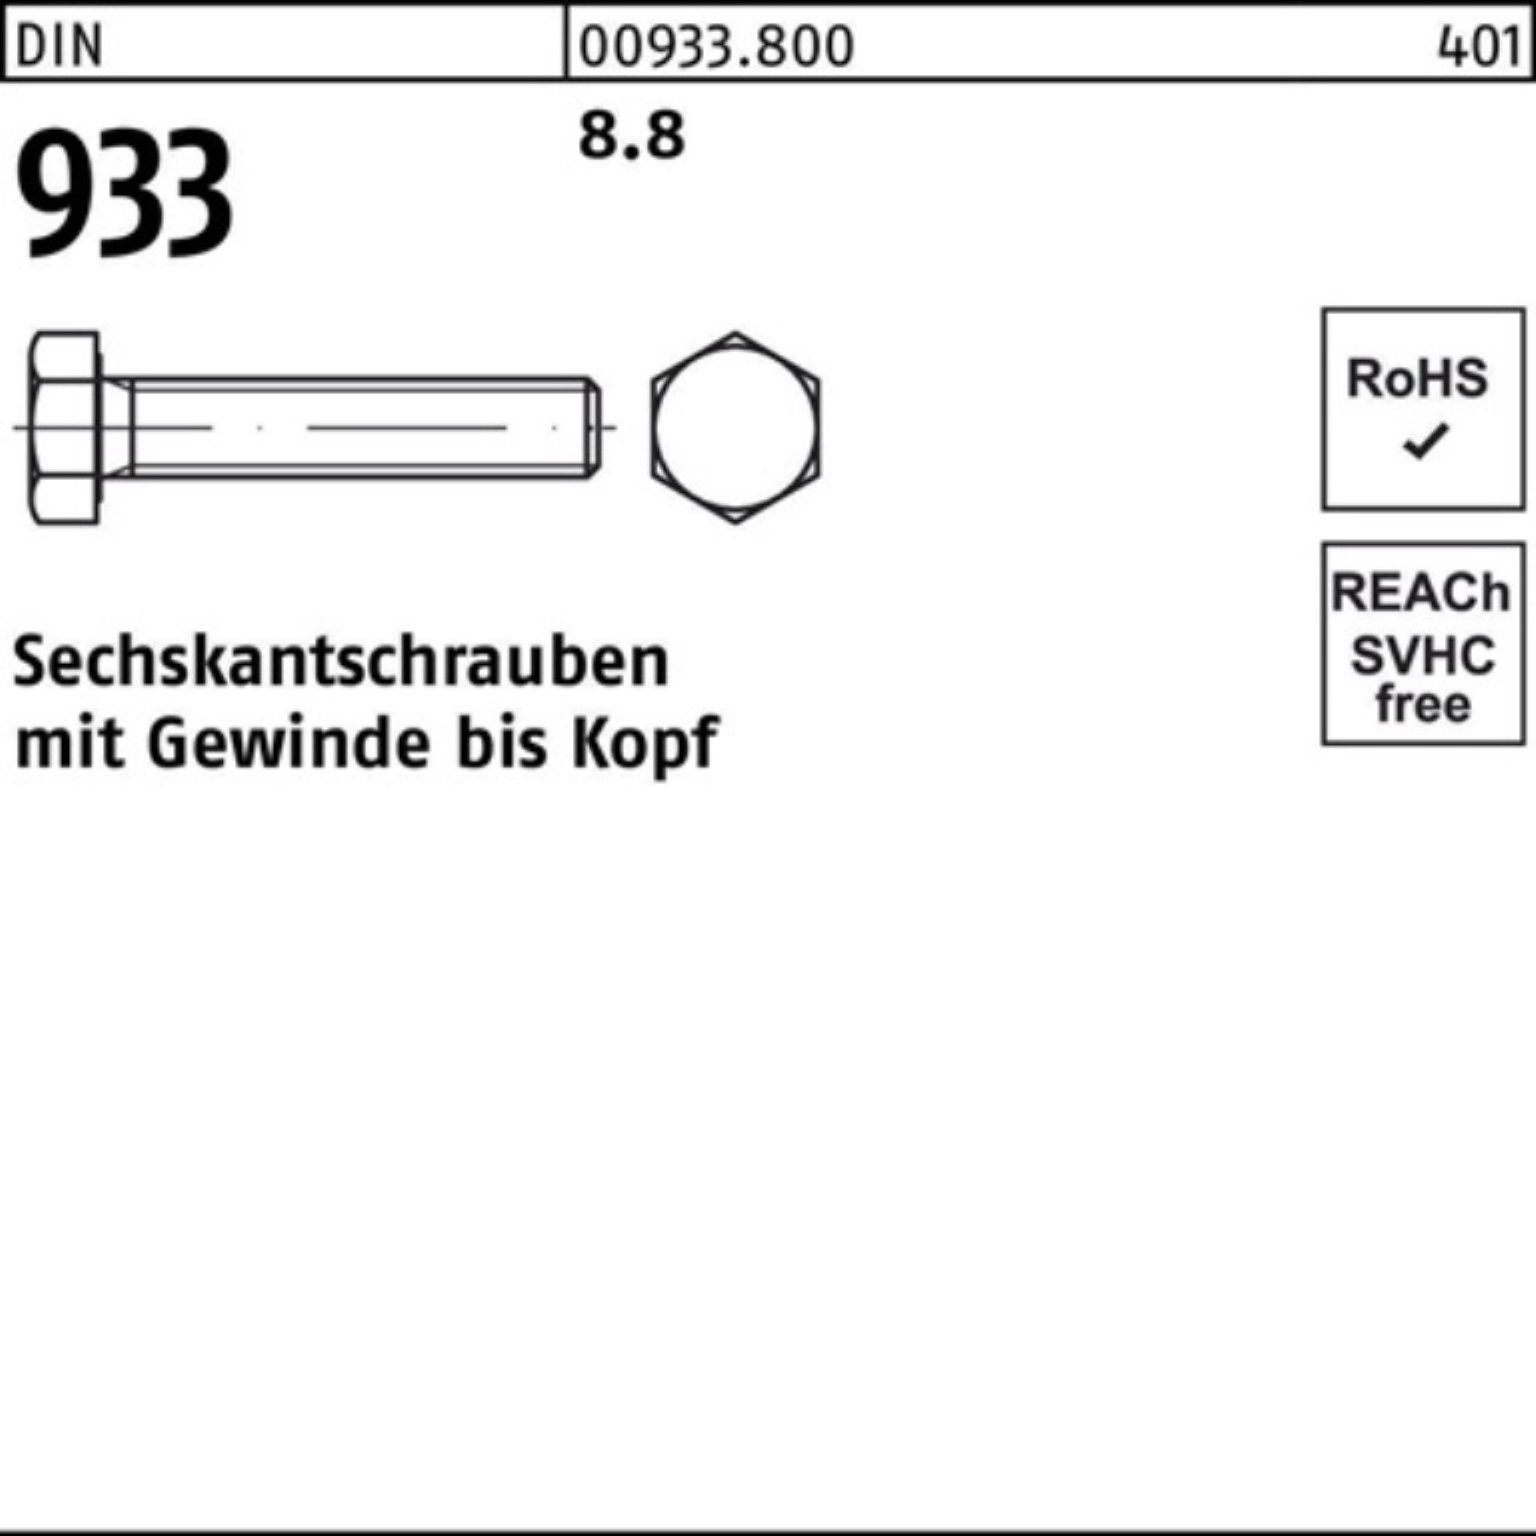 Reyher Sechskantschraube M4x VG DIN Stück Sechskantschraube 8.8 70 100 100er Pack 933 933 DIN